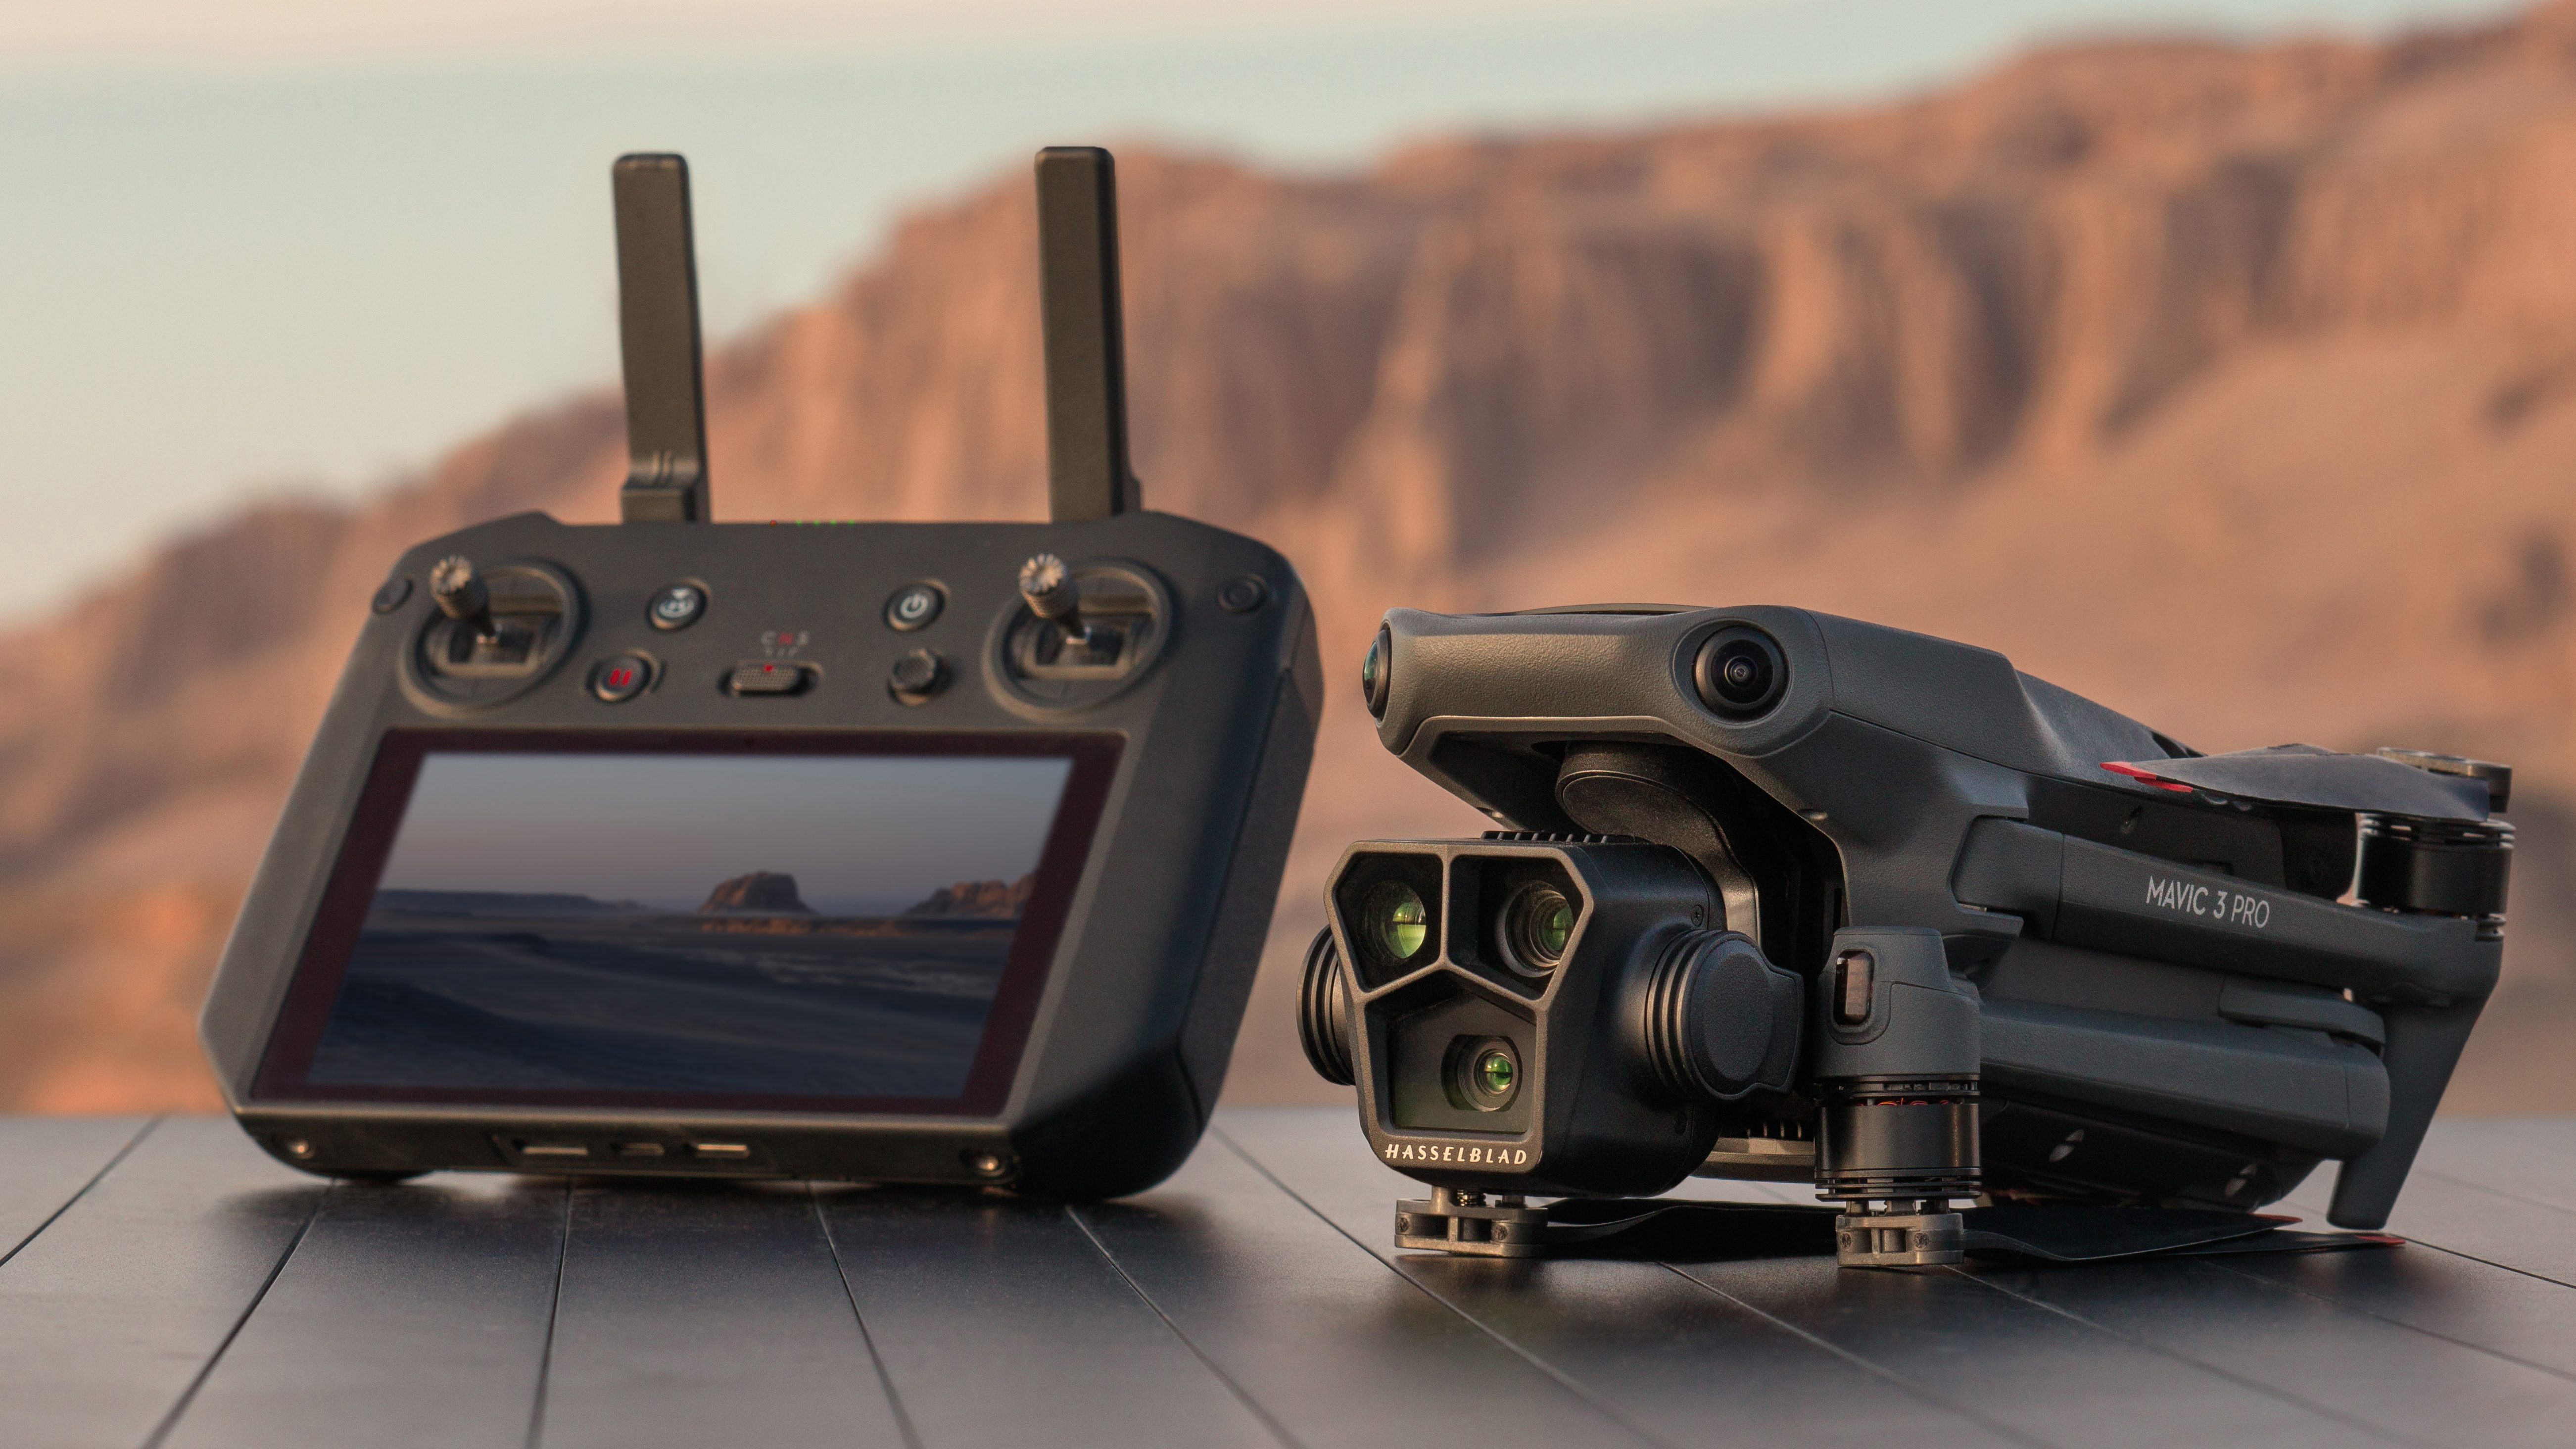 Le drone DJI Mavic 3 Pro posé sur un rocher à côté de sa manette